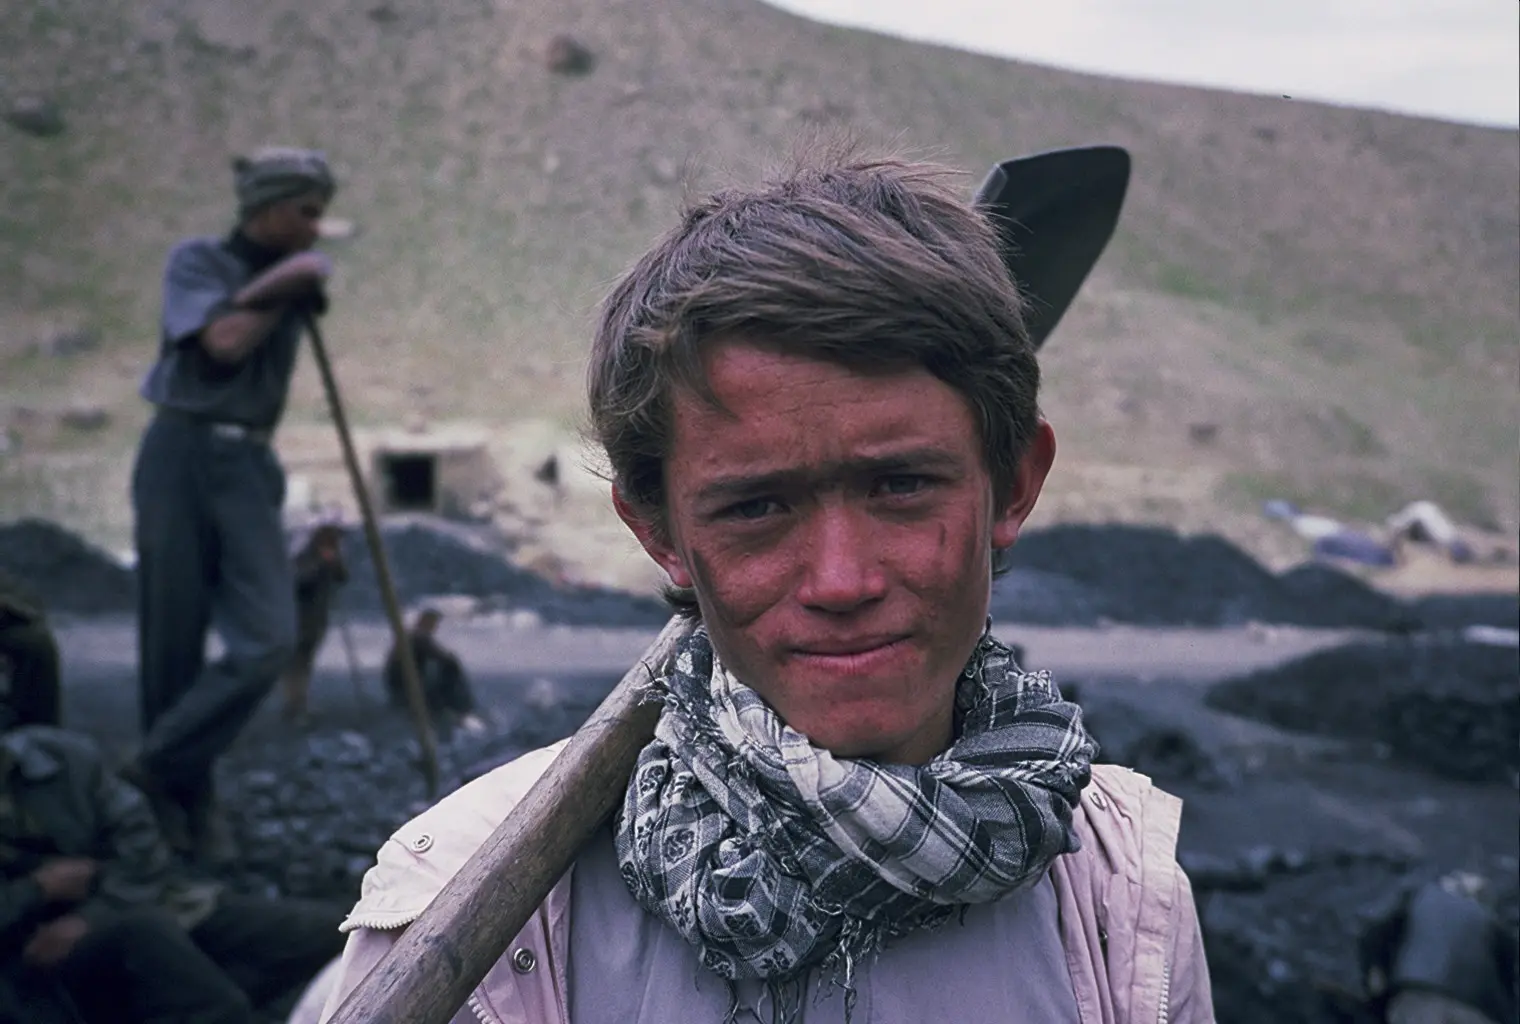 Mé dětství, má země – 20 let v Afghánistánu